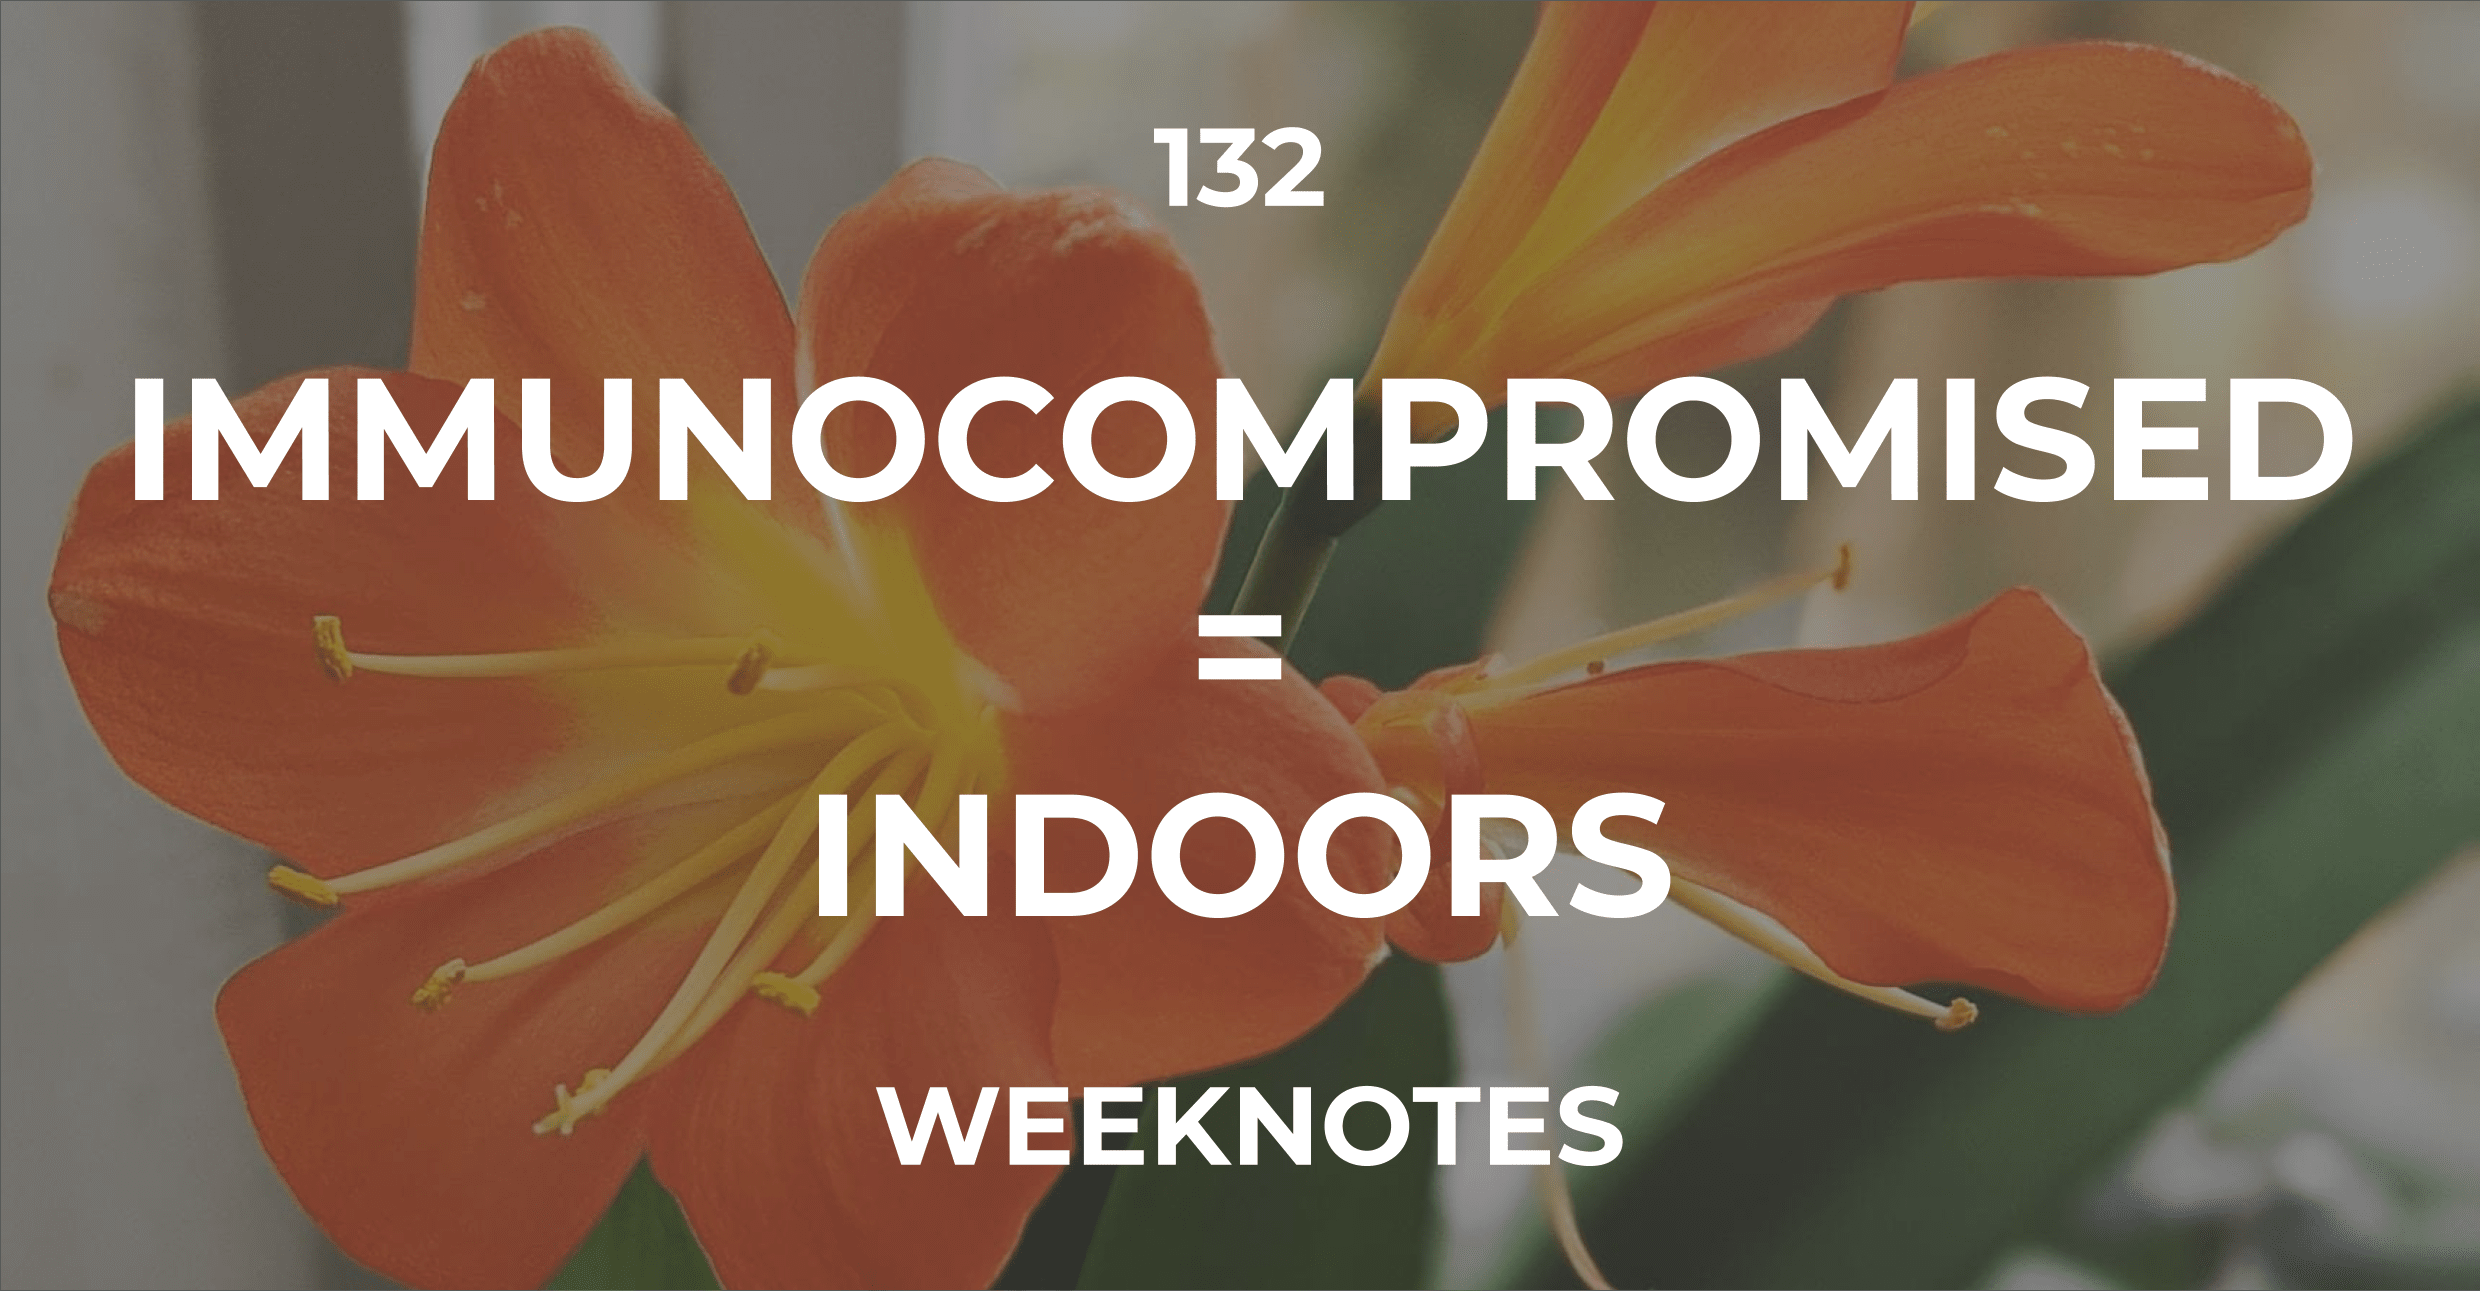 Immunocompromised = Indoors